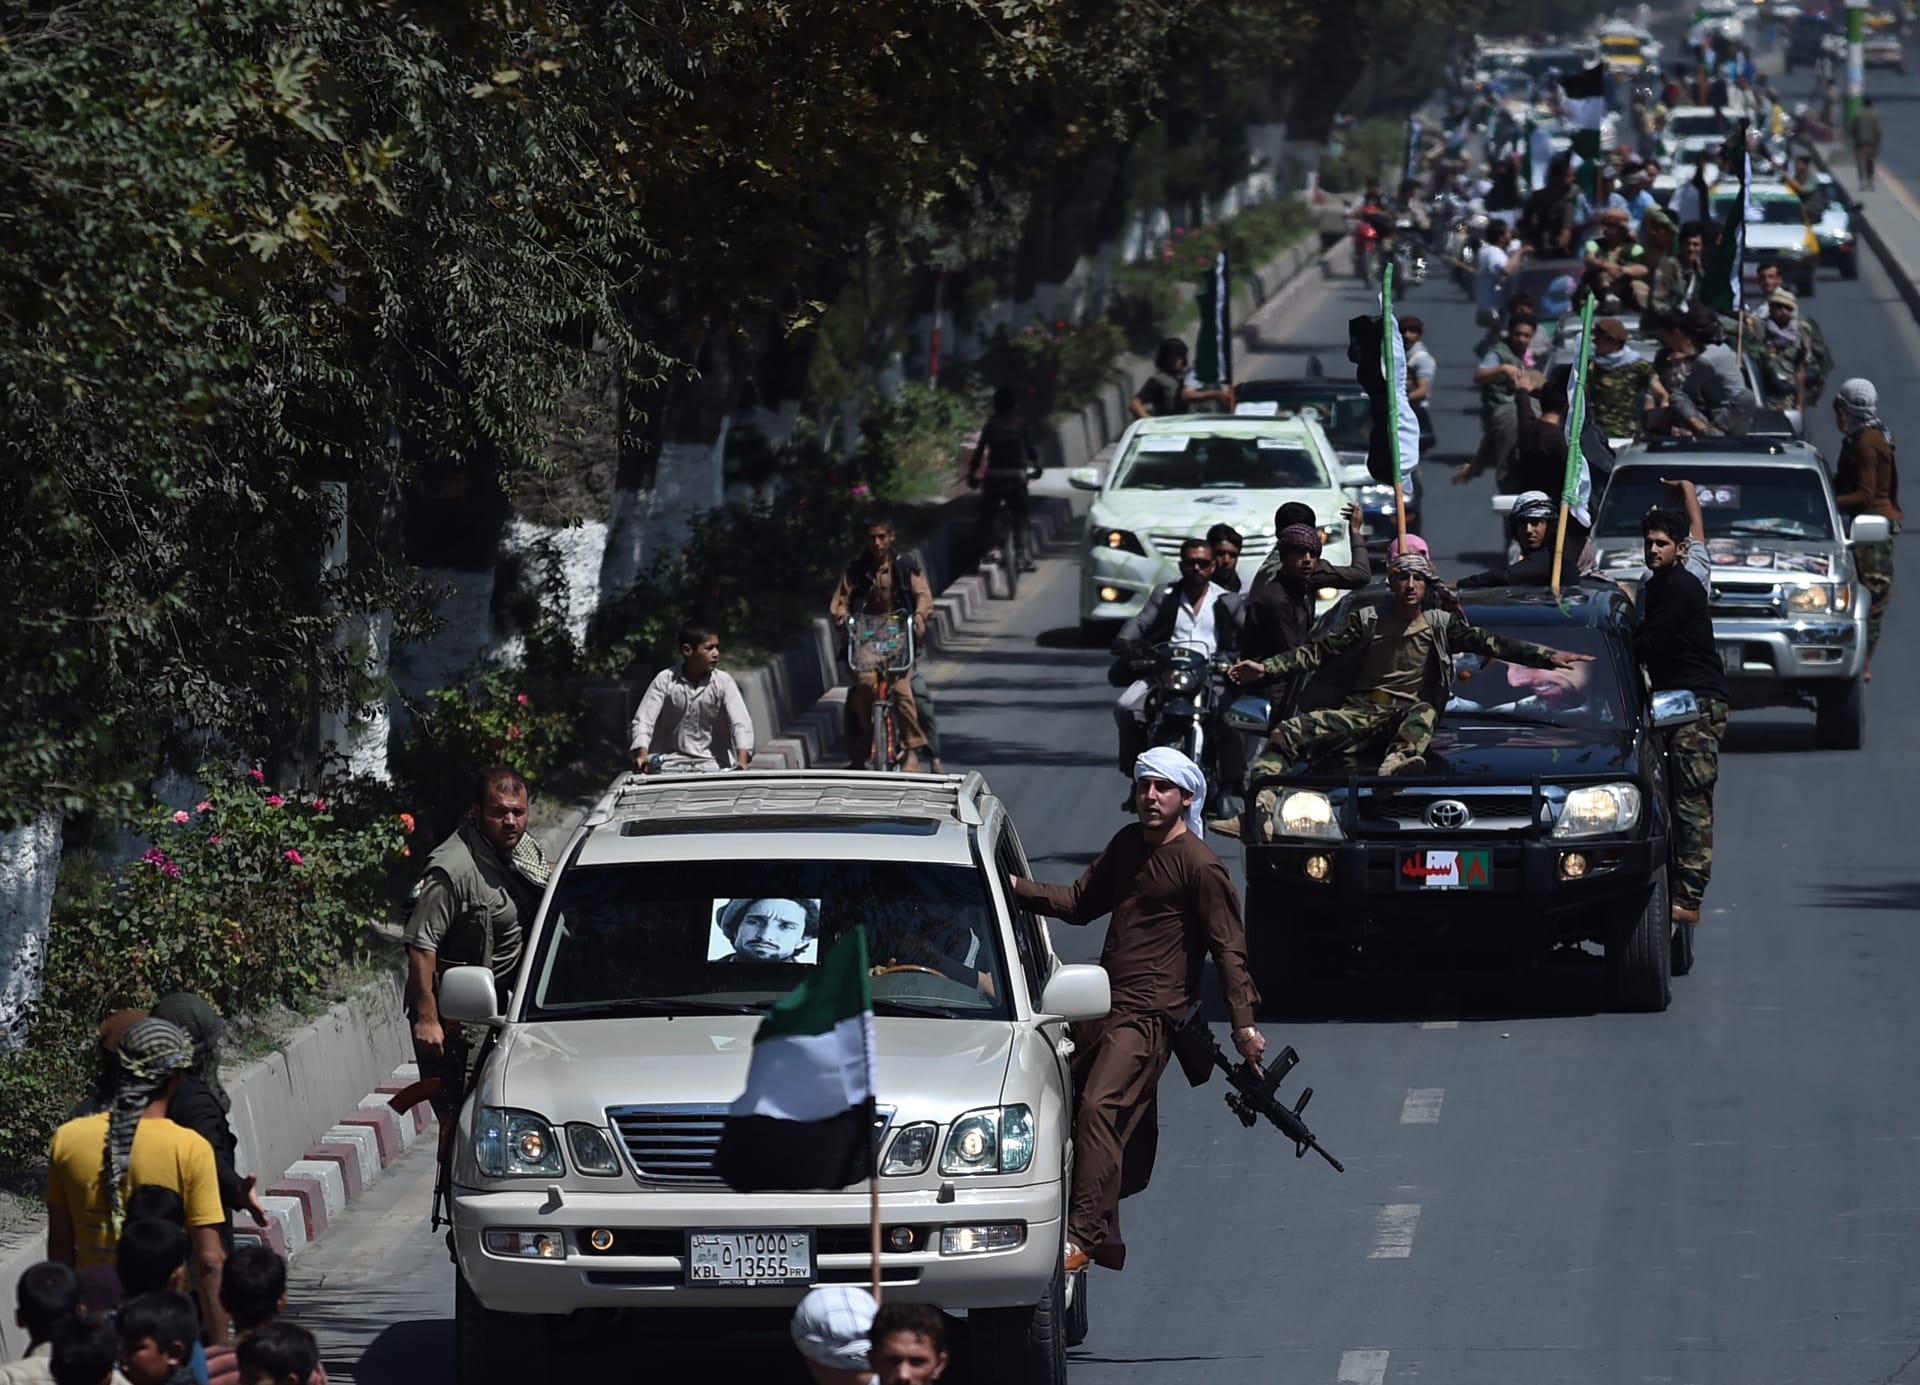 أنصار زعيم المقاومة الراحل أحمد شاه مسعود يحملون أسلحة أثناء ركوبهم في قافلة للاحتفال بالذكرى السنوية الرابعة عشرة لوفاته في كابول في 9 سبتمبر 2015